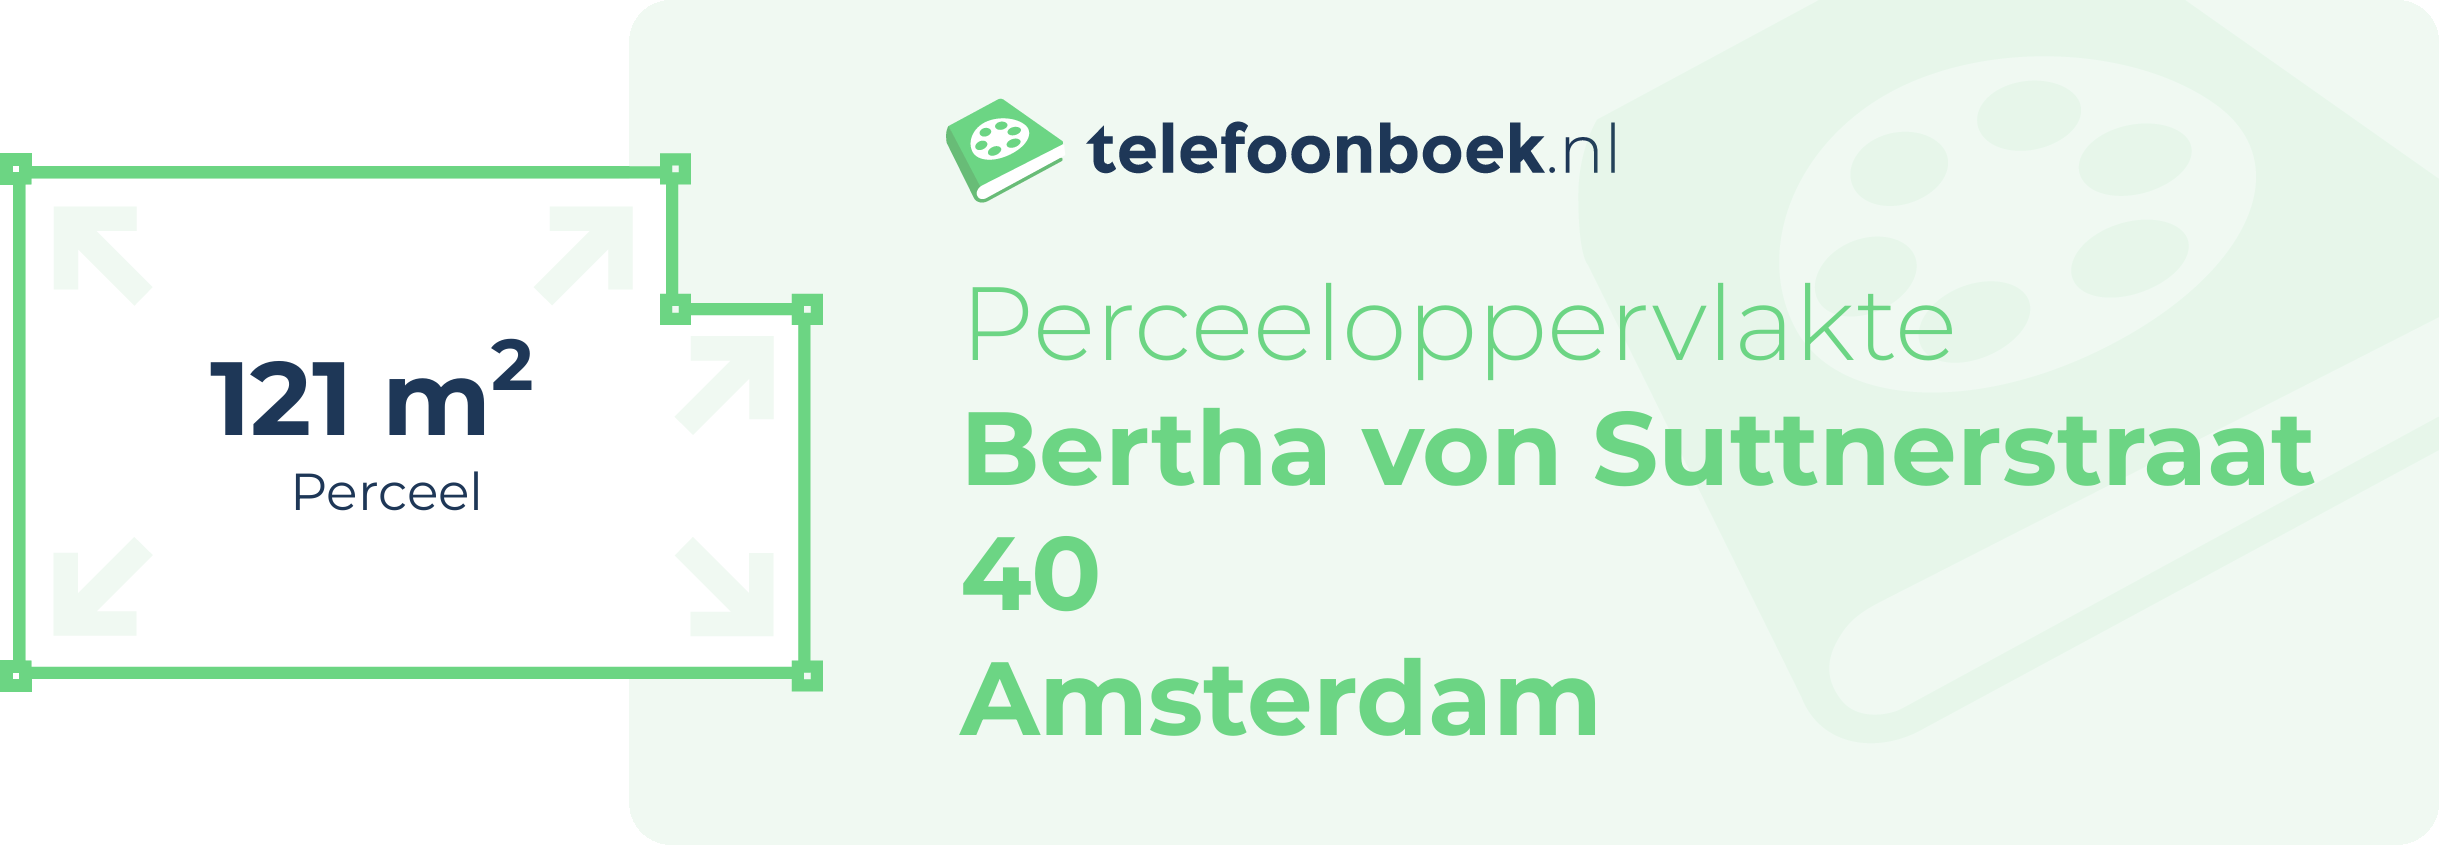 Perceeloppervlakte Bertha Von Suttnerstraat 40 Amsterdam